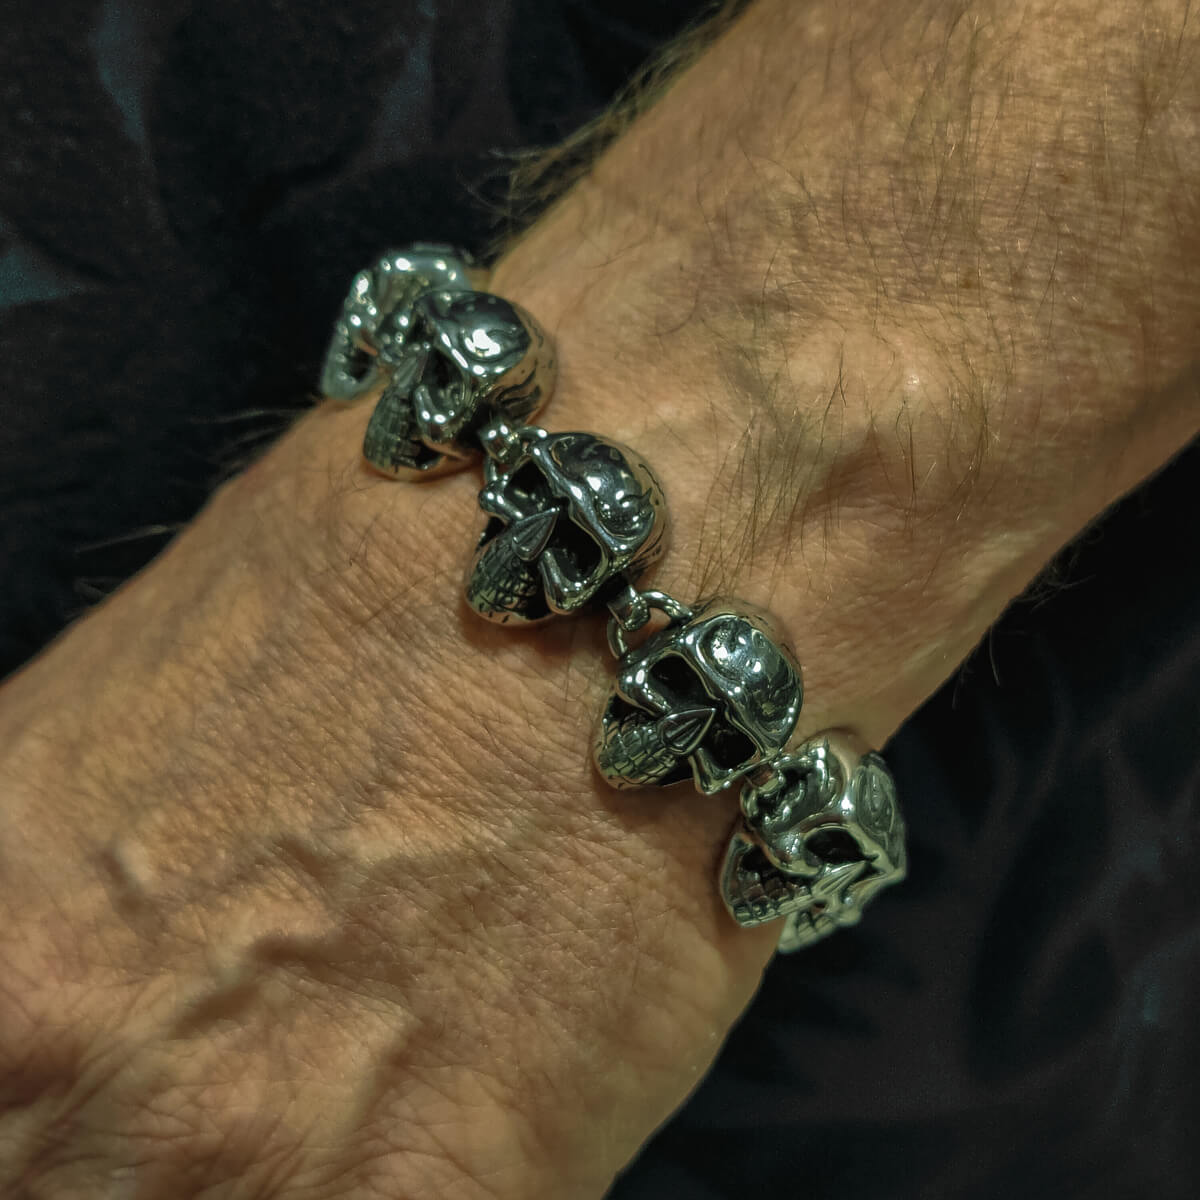 Skull bracelet with steel chain 21cm (Steel 316L)